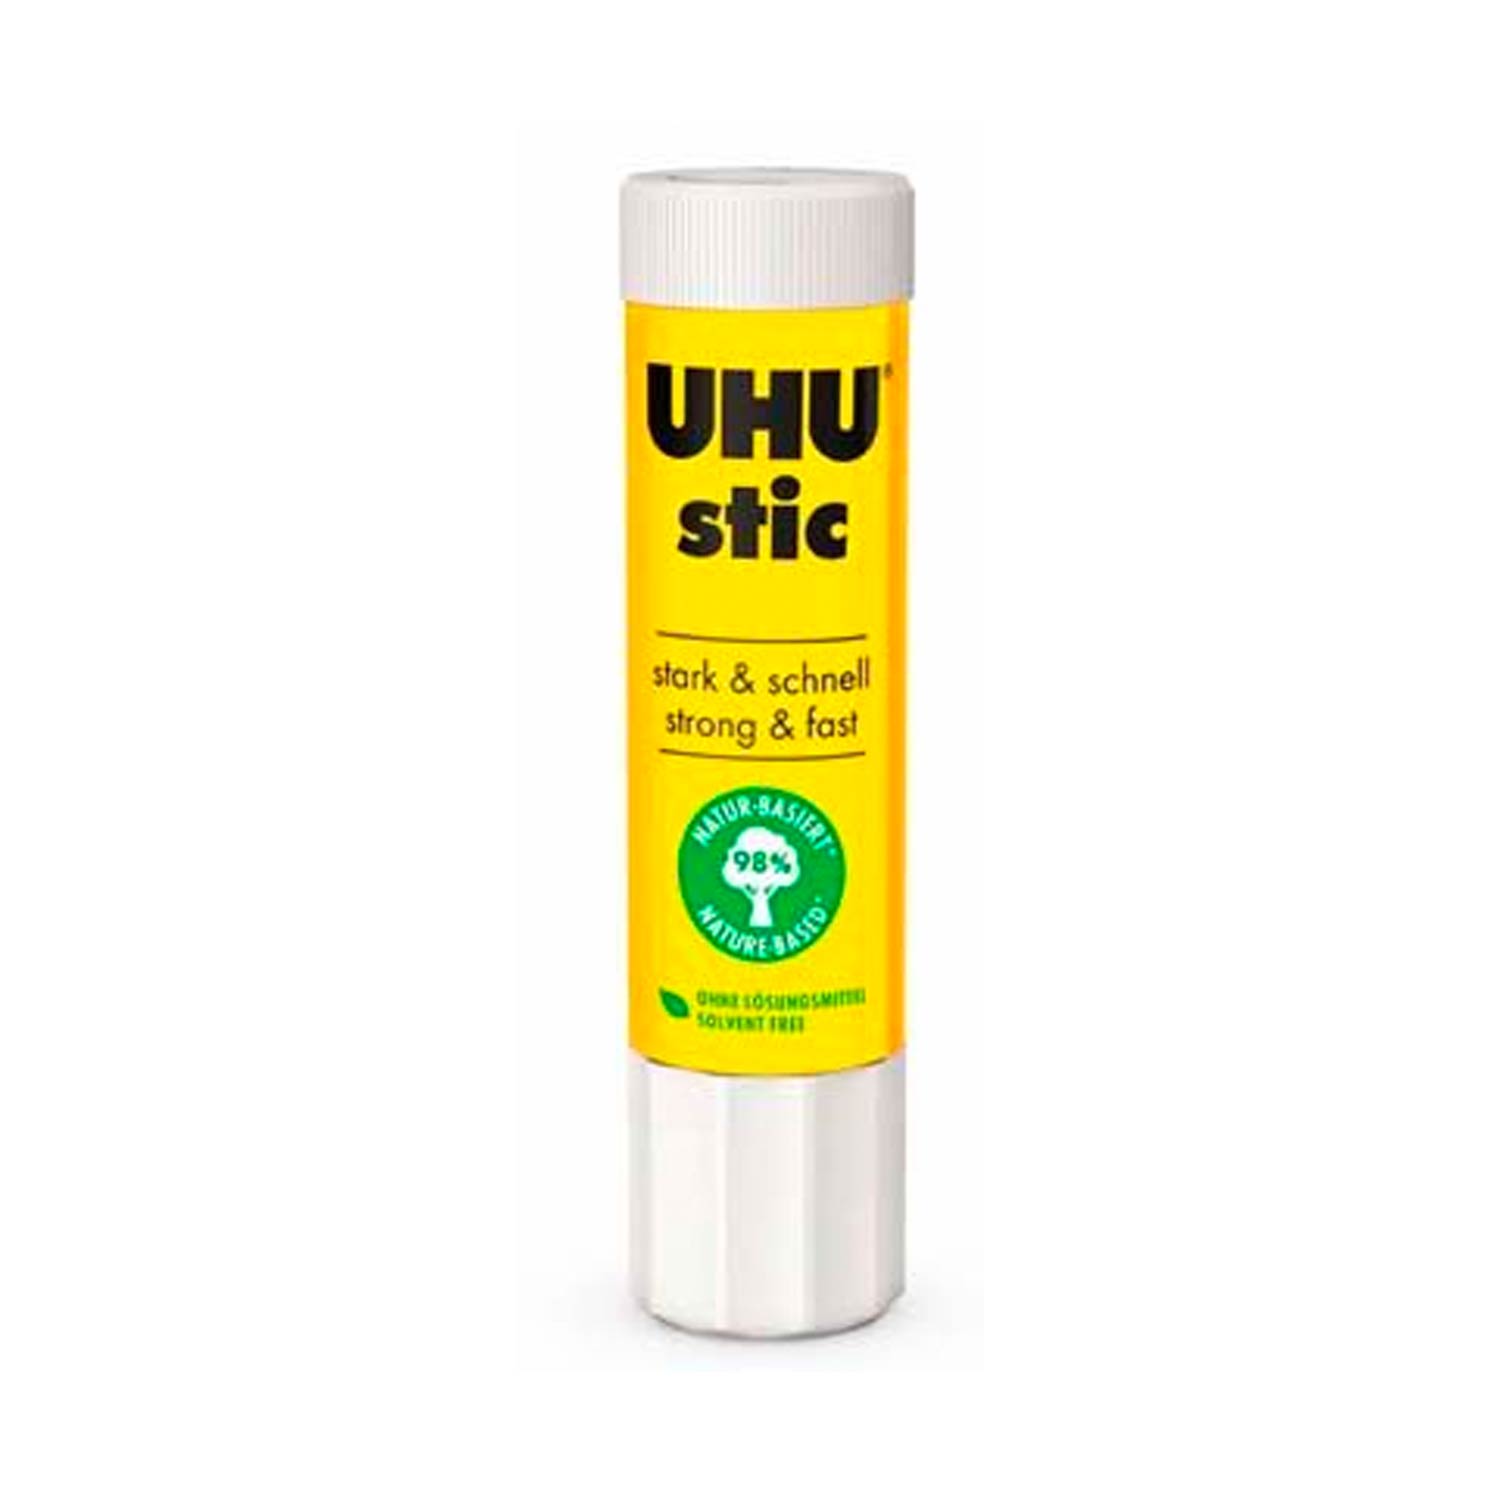 UHU stic Klebestift 21 g ohne Lösungsmittel für starkes und schnelles Kleben